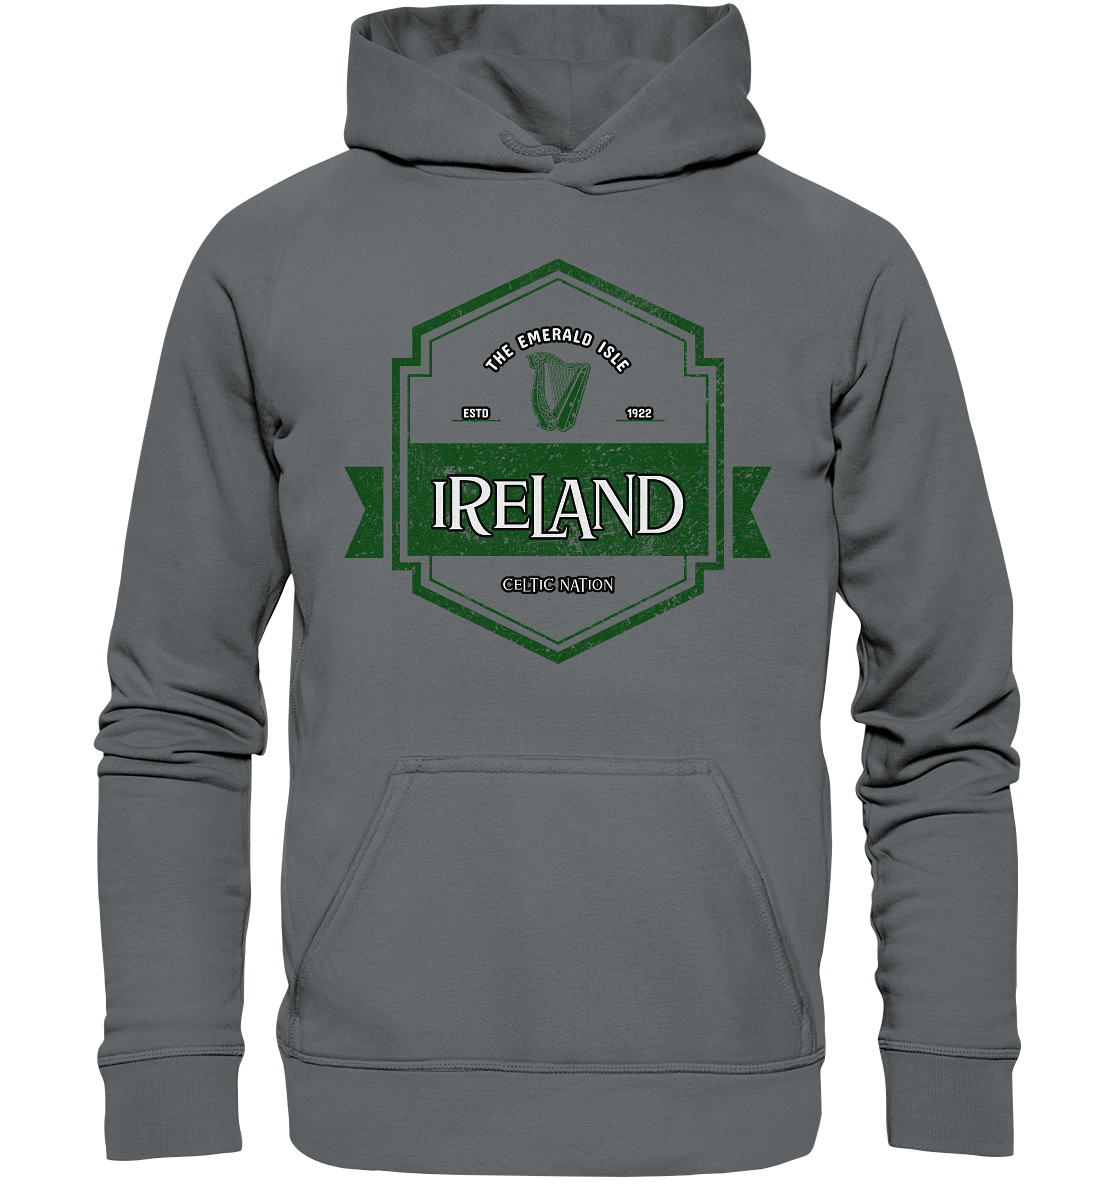 Ireland "The Emerald Isle / Celtic Nation" - Basic Unisex Hoodie